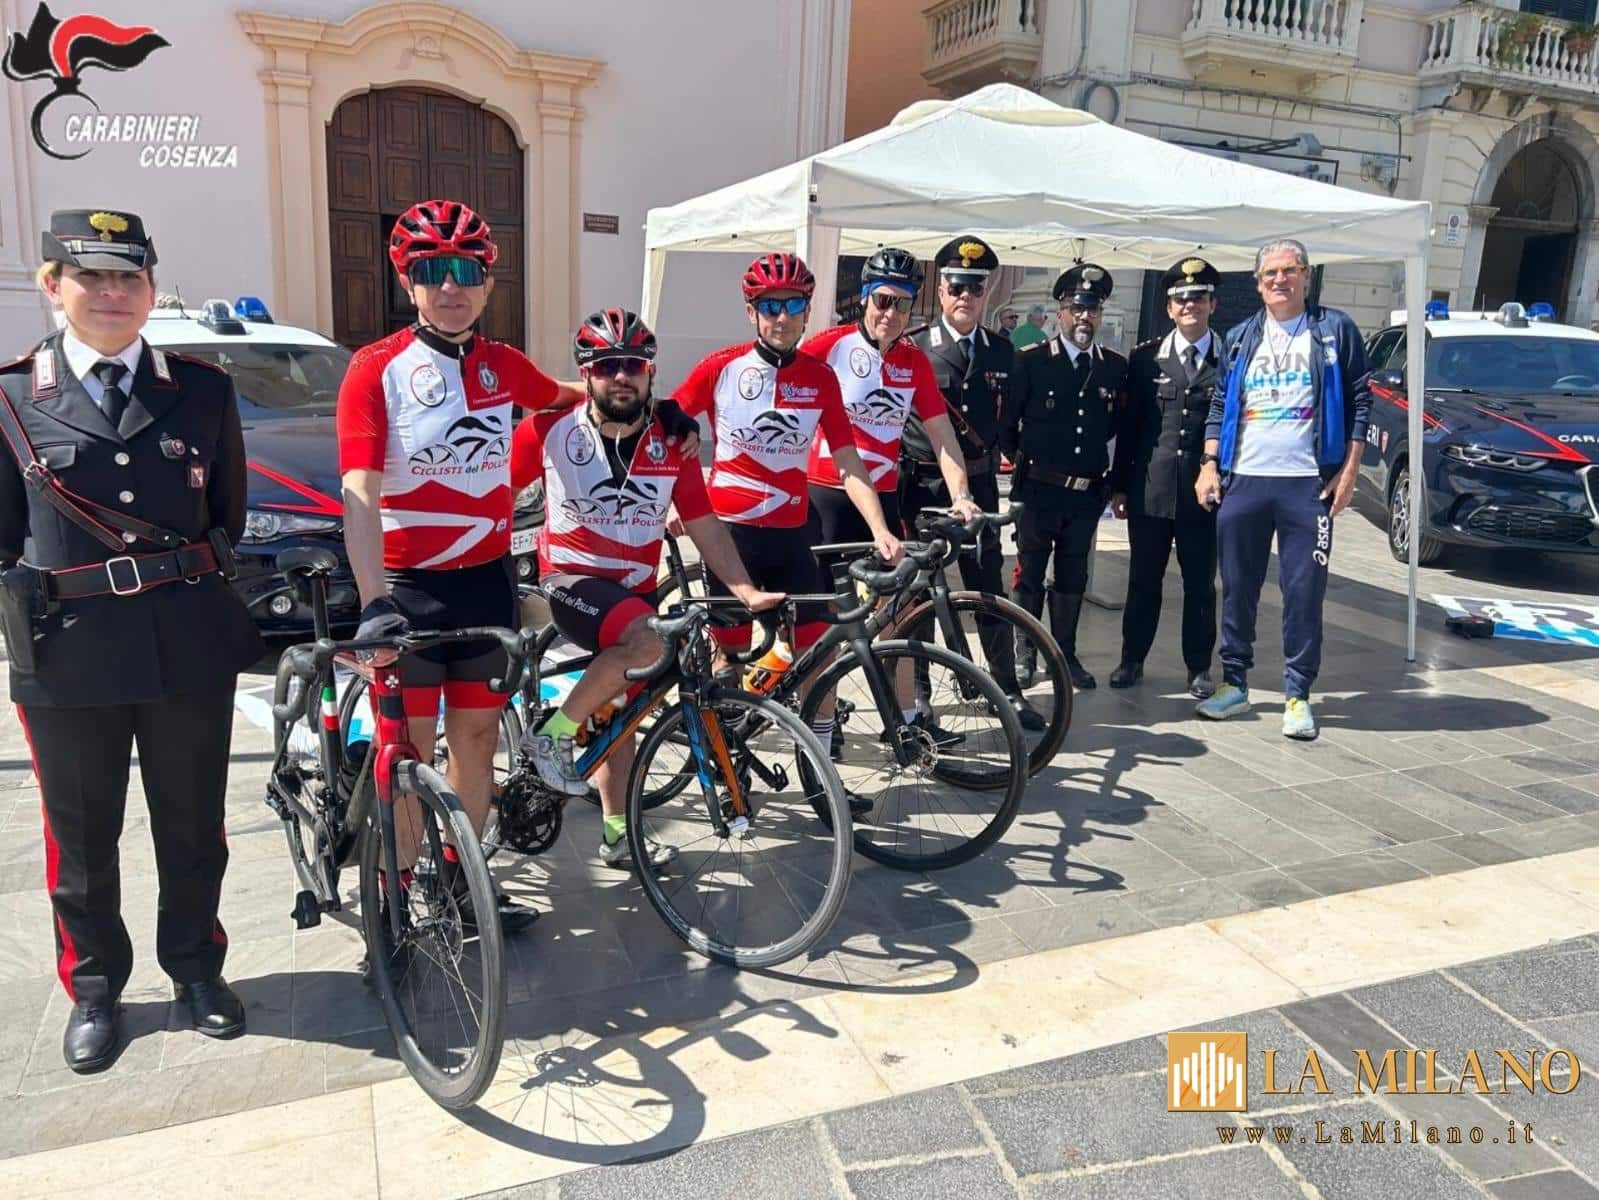 Cosenza. In occasione della staffetta i Carabinieri si schierano a fianco di associati e corridori, con lo scopo di sostenere la raccolta fondi.